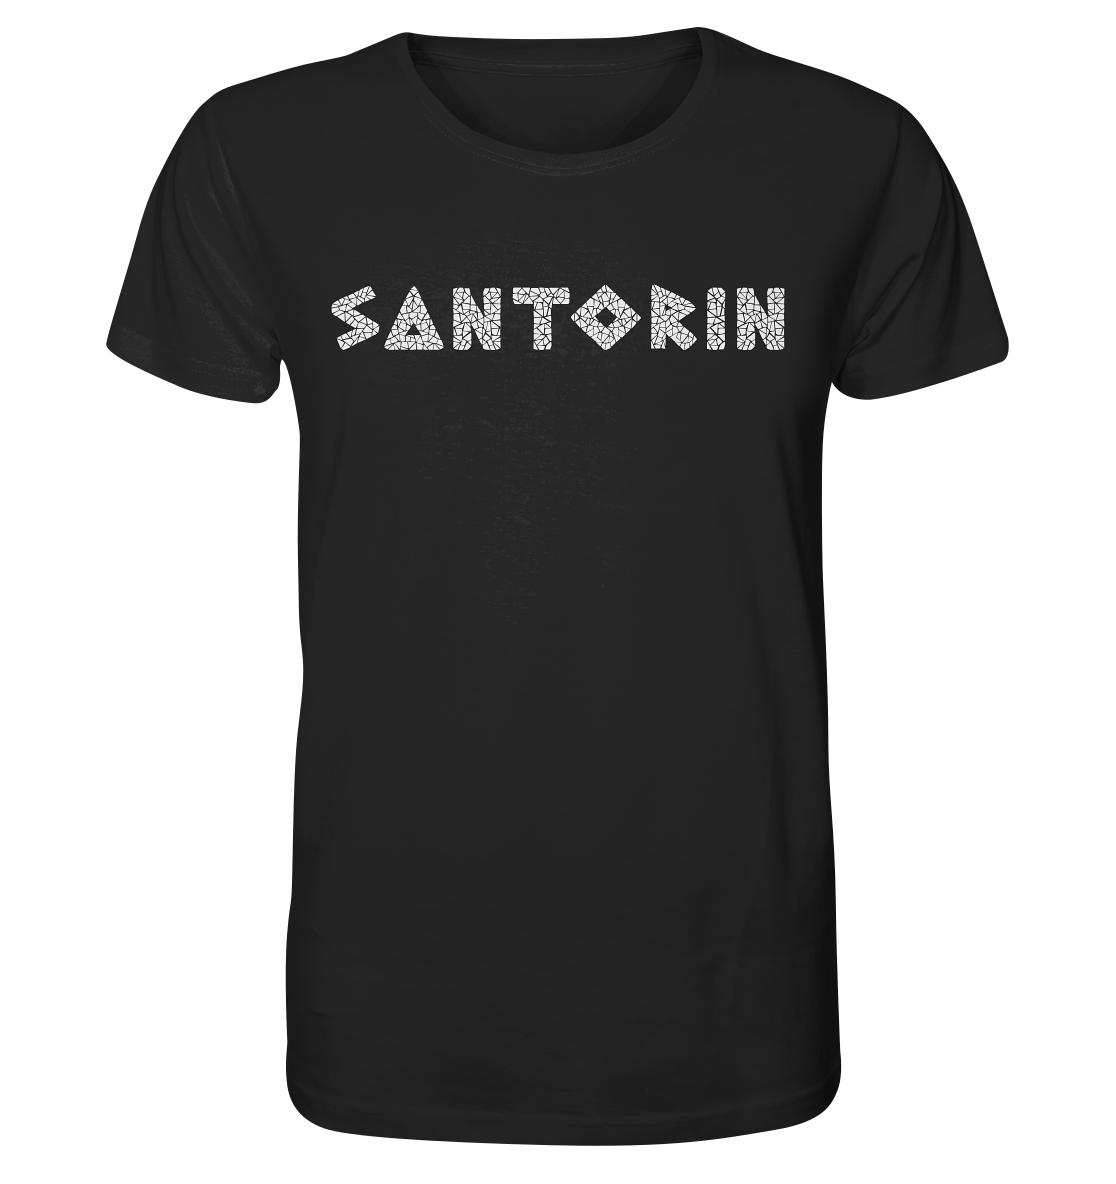 Santorini Mosaic - Organic Shirt